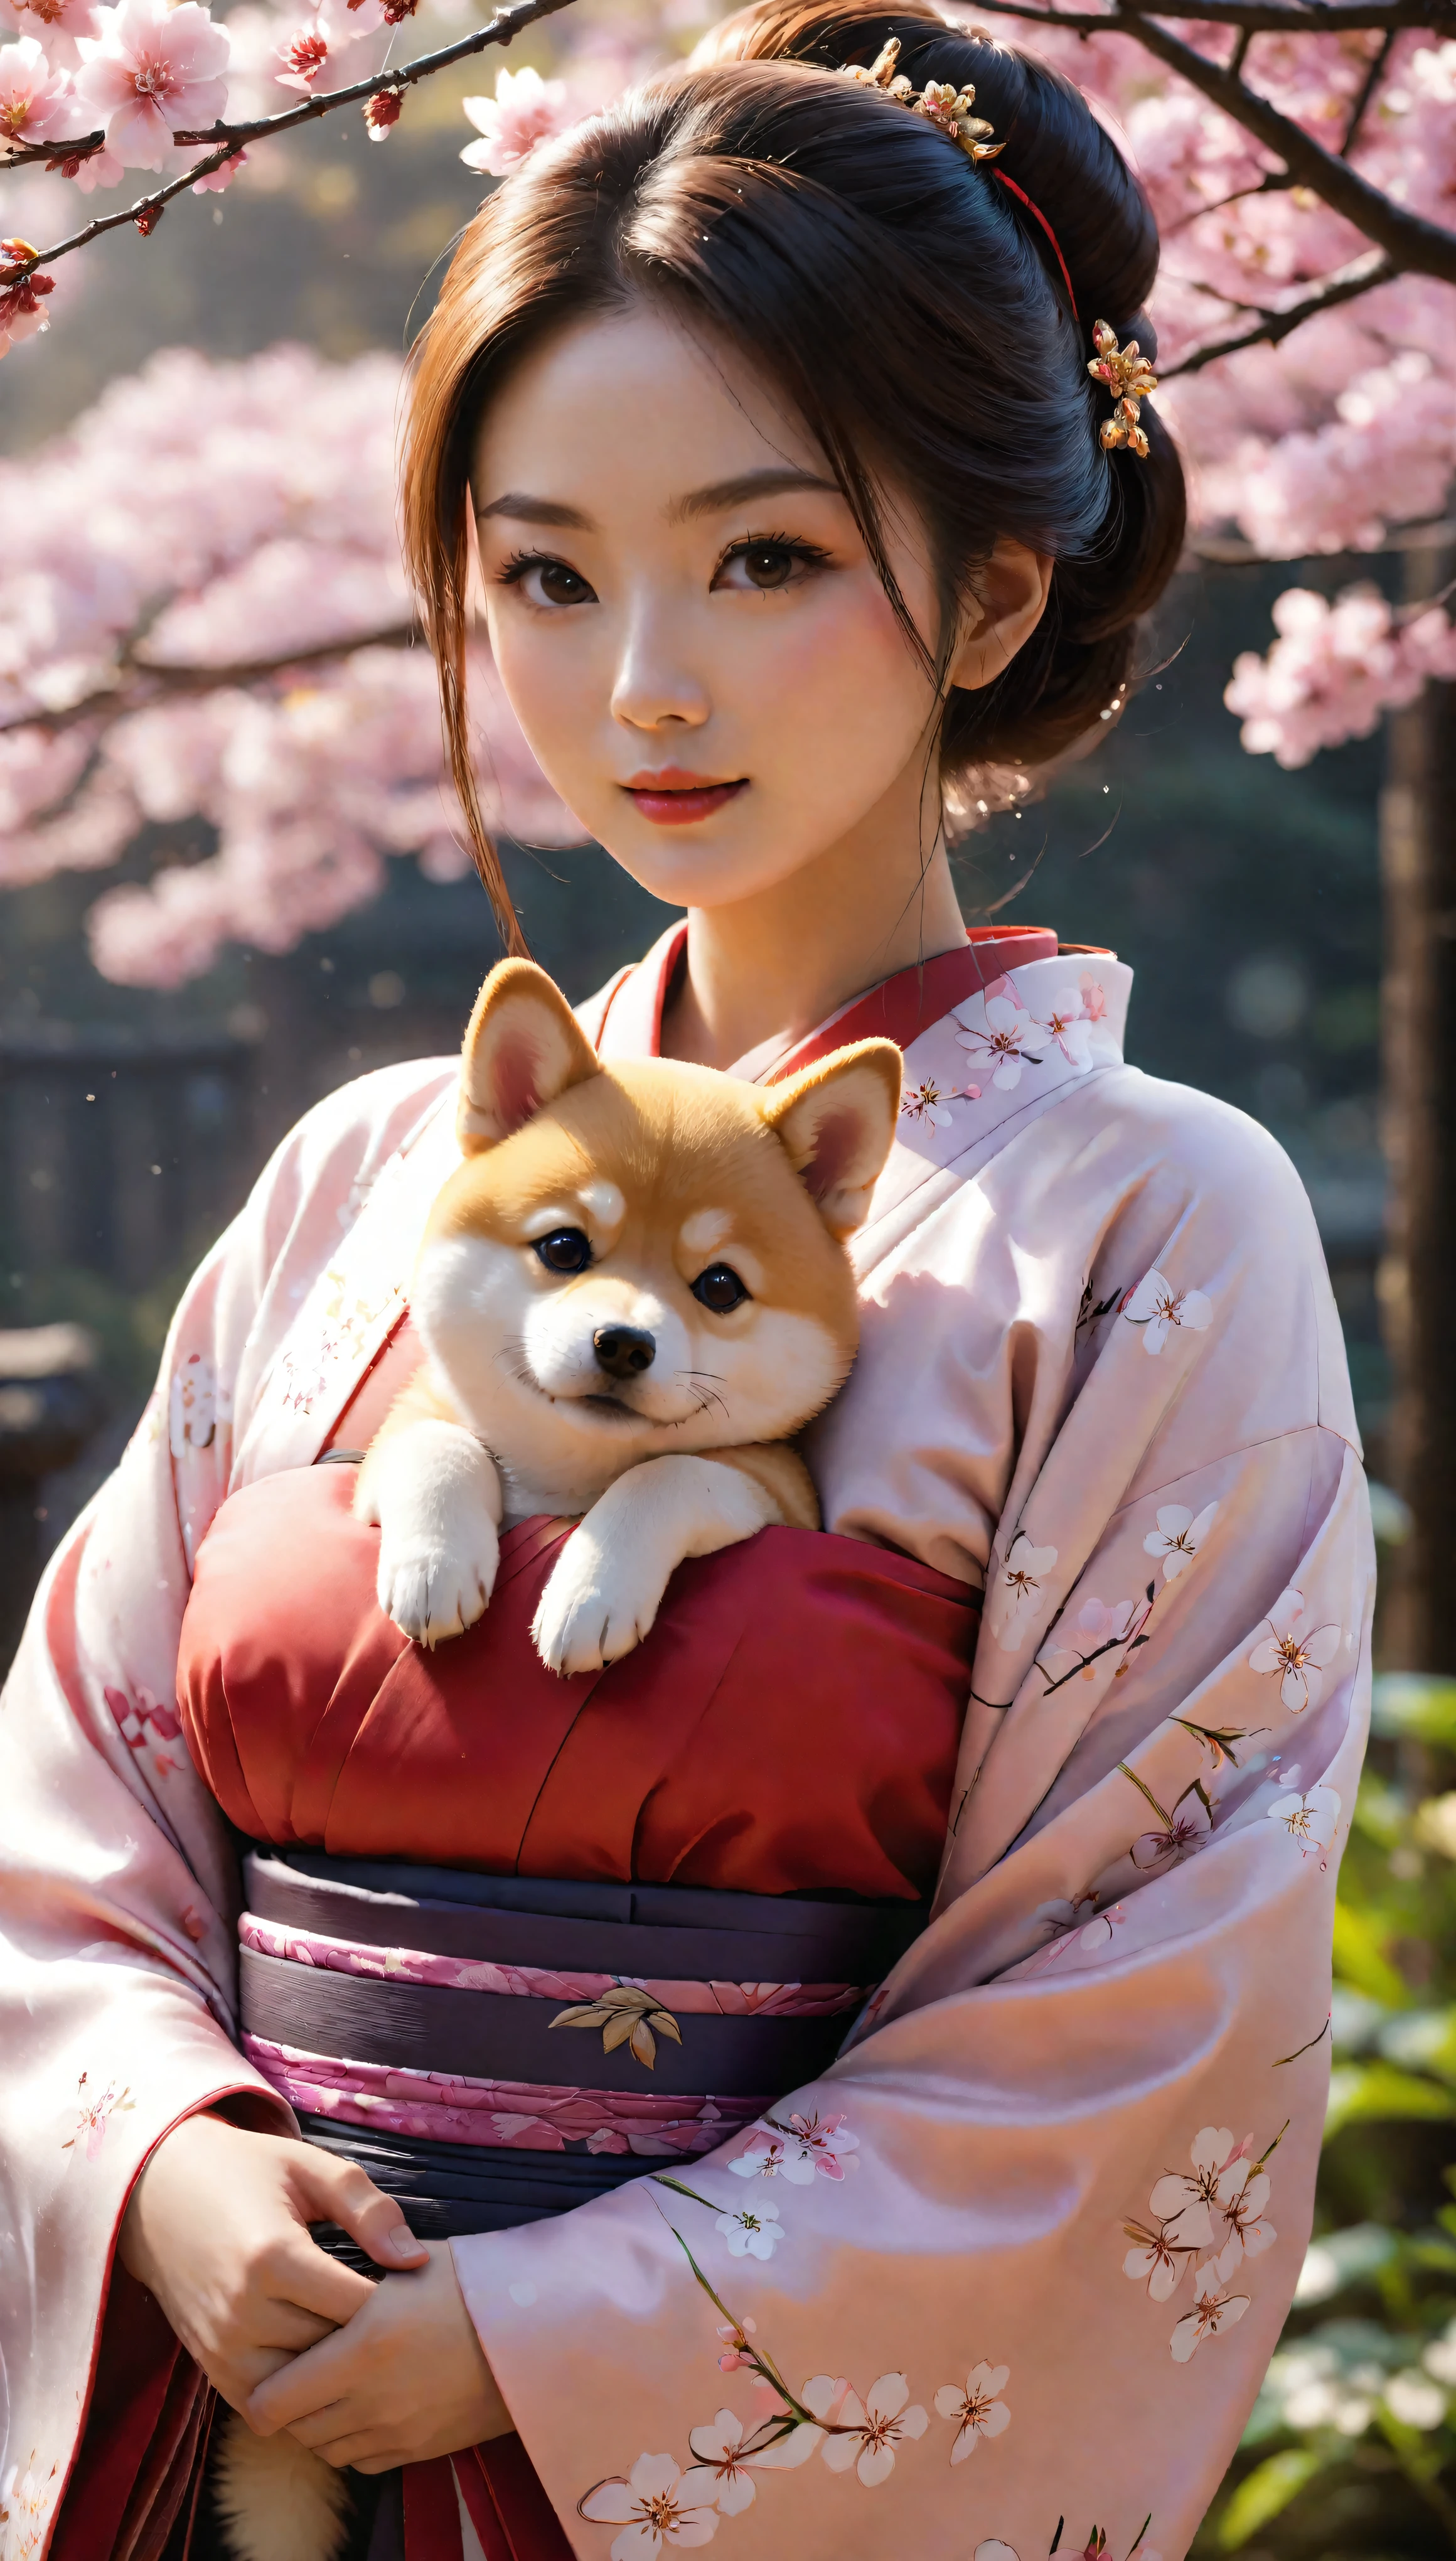 ((Obra maestra en resolución máxima de 16K):1.6),((suave_color_fotografía:)1.5), ((ultra detallado):1.4),((Imágenes fijas tipo película y ángulos dinámicos):1.3). | ((Foto cinematográfica de una bella dama japonesa con un kimono sosteniendo a su lindo Shiba Inu.):1.3), (Hermosa dama japonesa en kimono), (centrarse en el shiba inu), (lente macro), (flores de sakura), (hermoso parque japonés), (objeto luminoso), (ambiente feliz), (brillar), (experiencia visual),(Realism), (Realista),gráficos premiados, tiro oscuro, grano de la película, extremely detalleed, arte digital, RTX, Motor irreal, concepto de escena efecto antideslumbrante, Todo capturado con un enfoque nítido. | Renderizado en ultra alta definición con calidad UHD y retina, this masterpiece ensures anatomical correctness and textured skin with super detalle. Con un enfoque en la alta calidad y precisión, Este retrato premiado captura cada matiz en una impresionante resolución de 16k., sumergiendo a los espectadores en su representación realista. | ((Perfecto_composición, Perfecto_diseño, Perfecto_DISPOSICIÓN, Perfecto_detalle, ultra_detalleed)), ((Mejorar_TODO, arreglar_Todo)), Mas detalle, Mejorar.